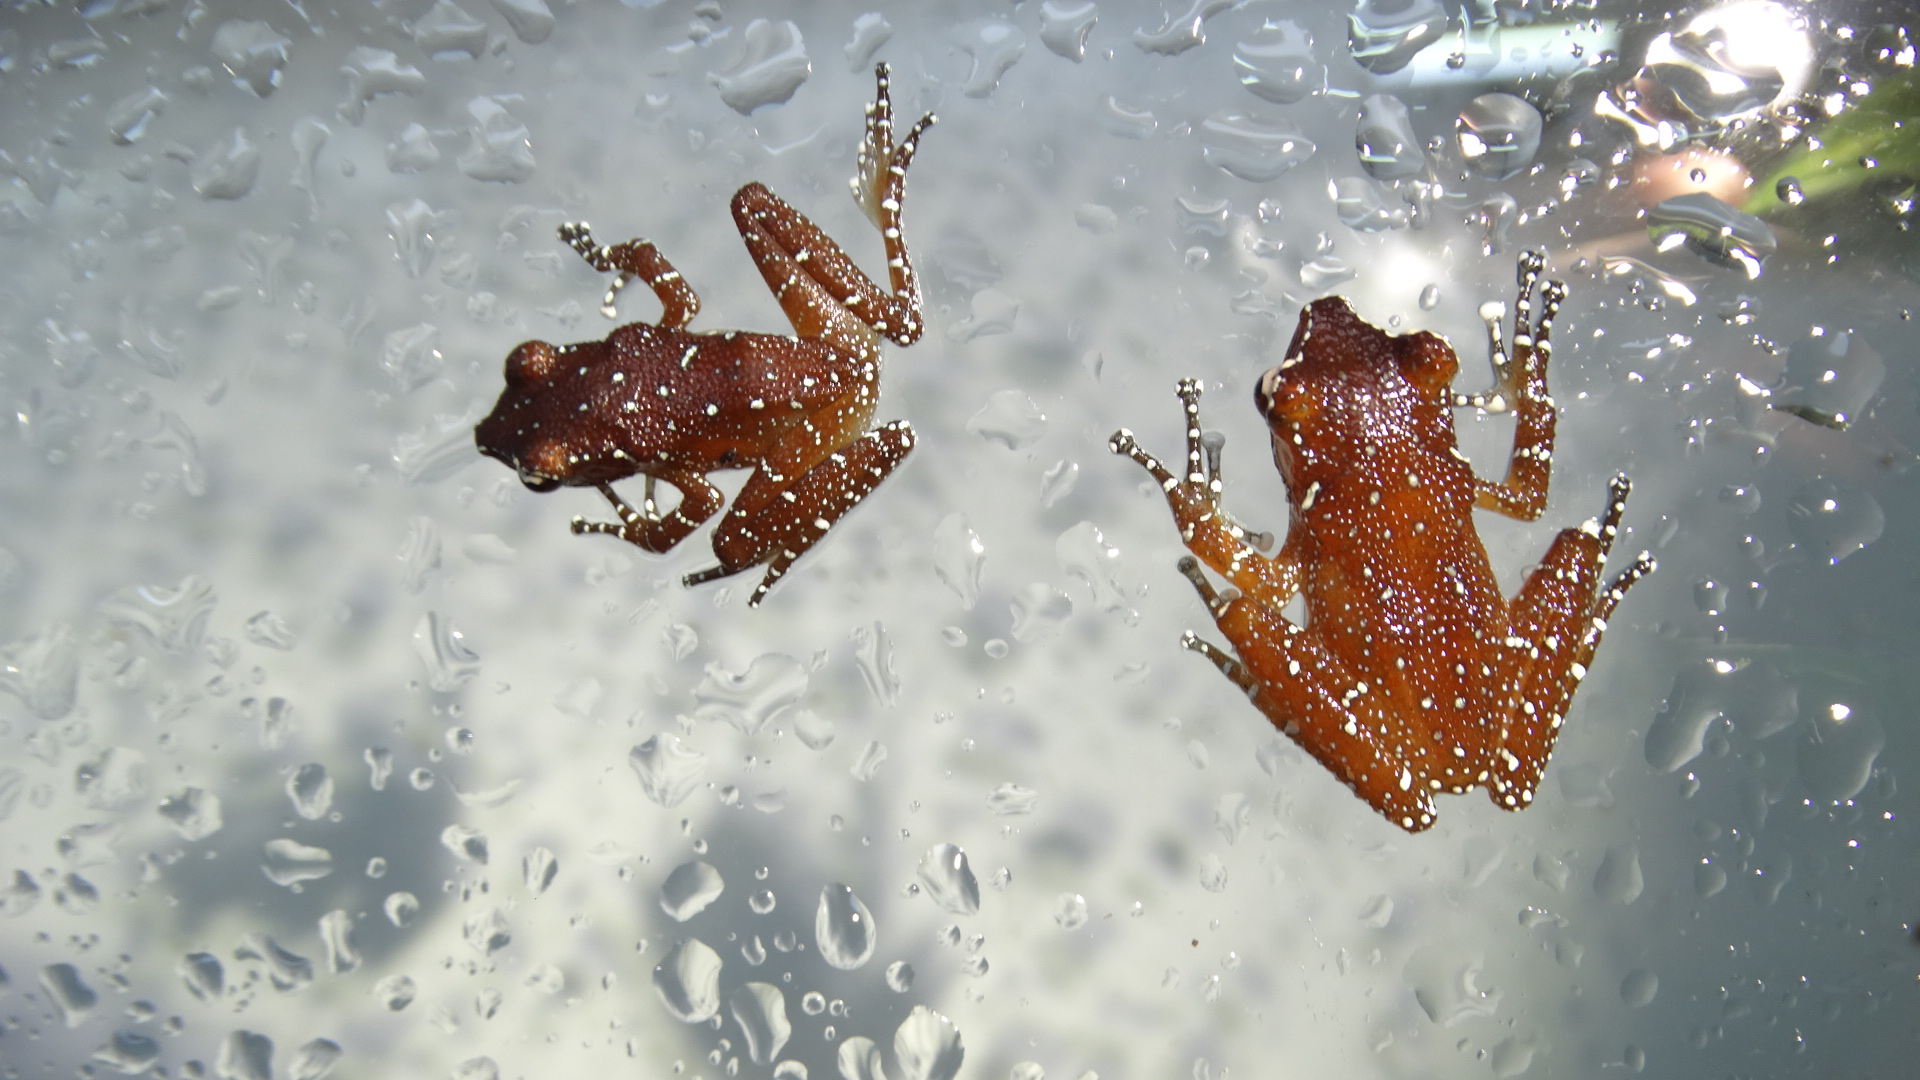 Two cinnamon froglets sat on glass